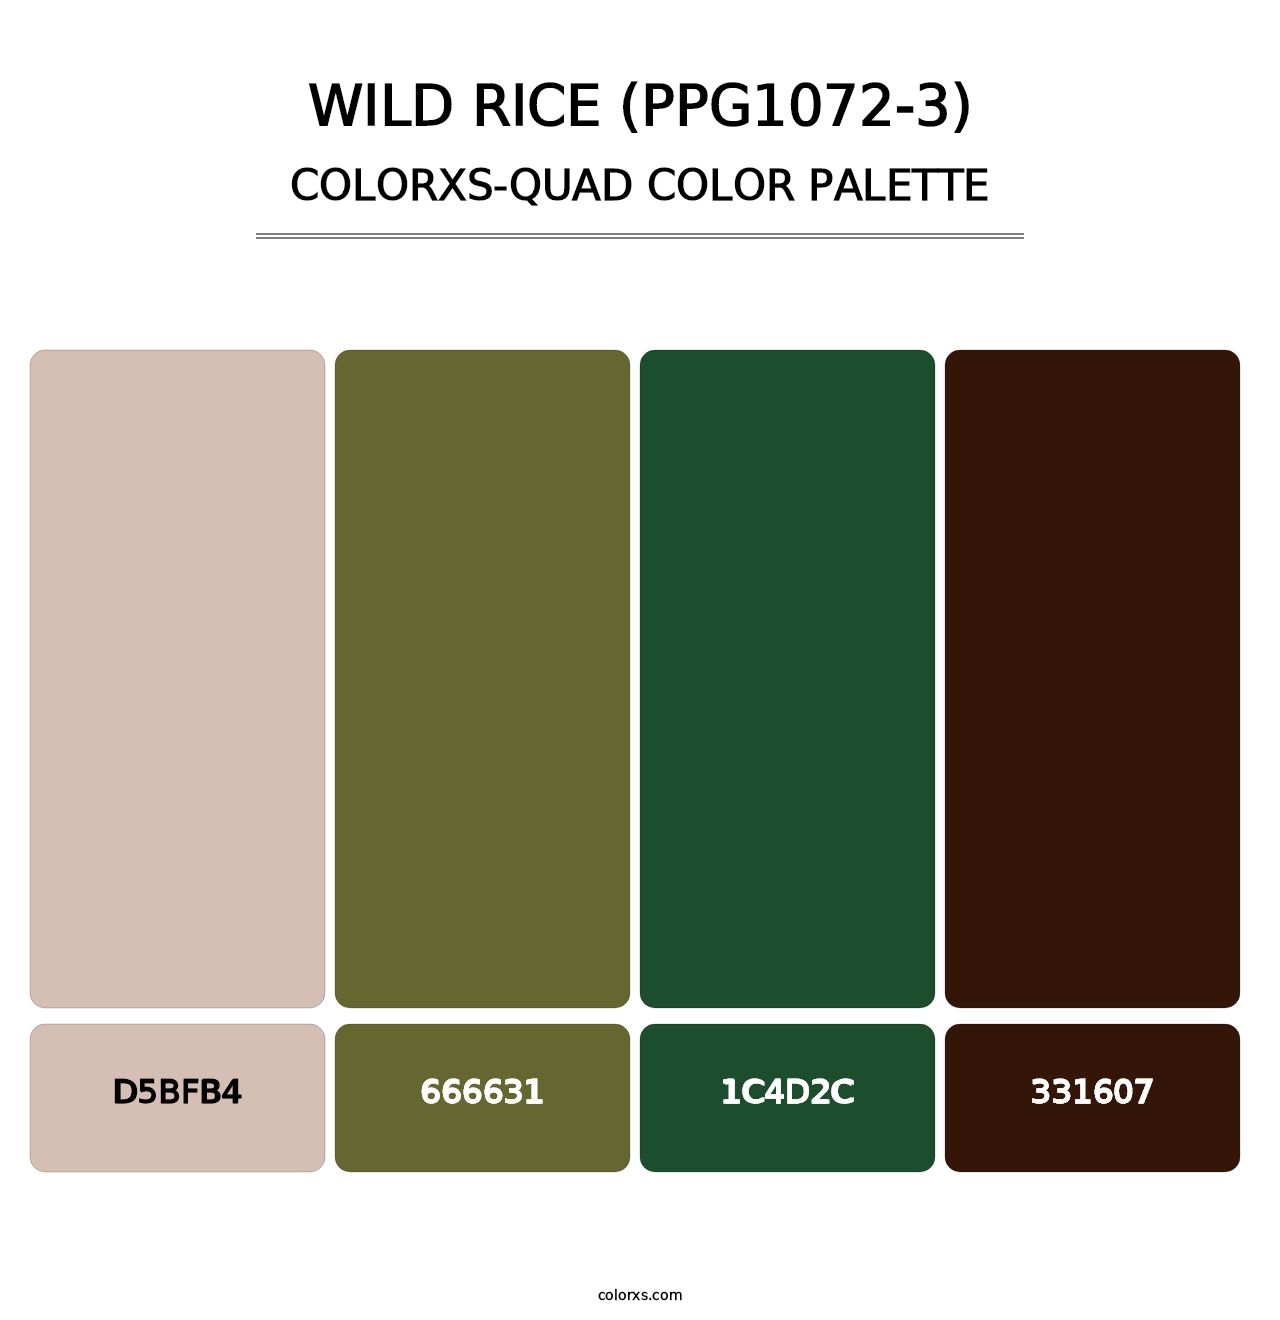 Wild Rice (PPG1072-3) - Colorxs Quad Palette